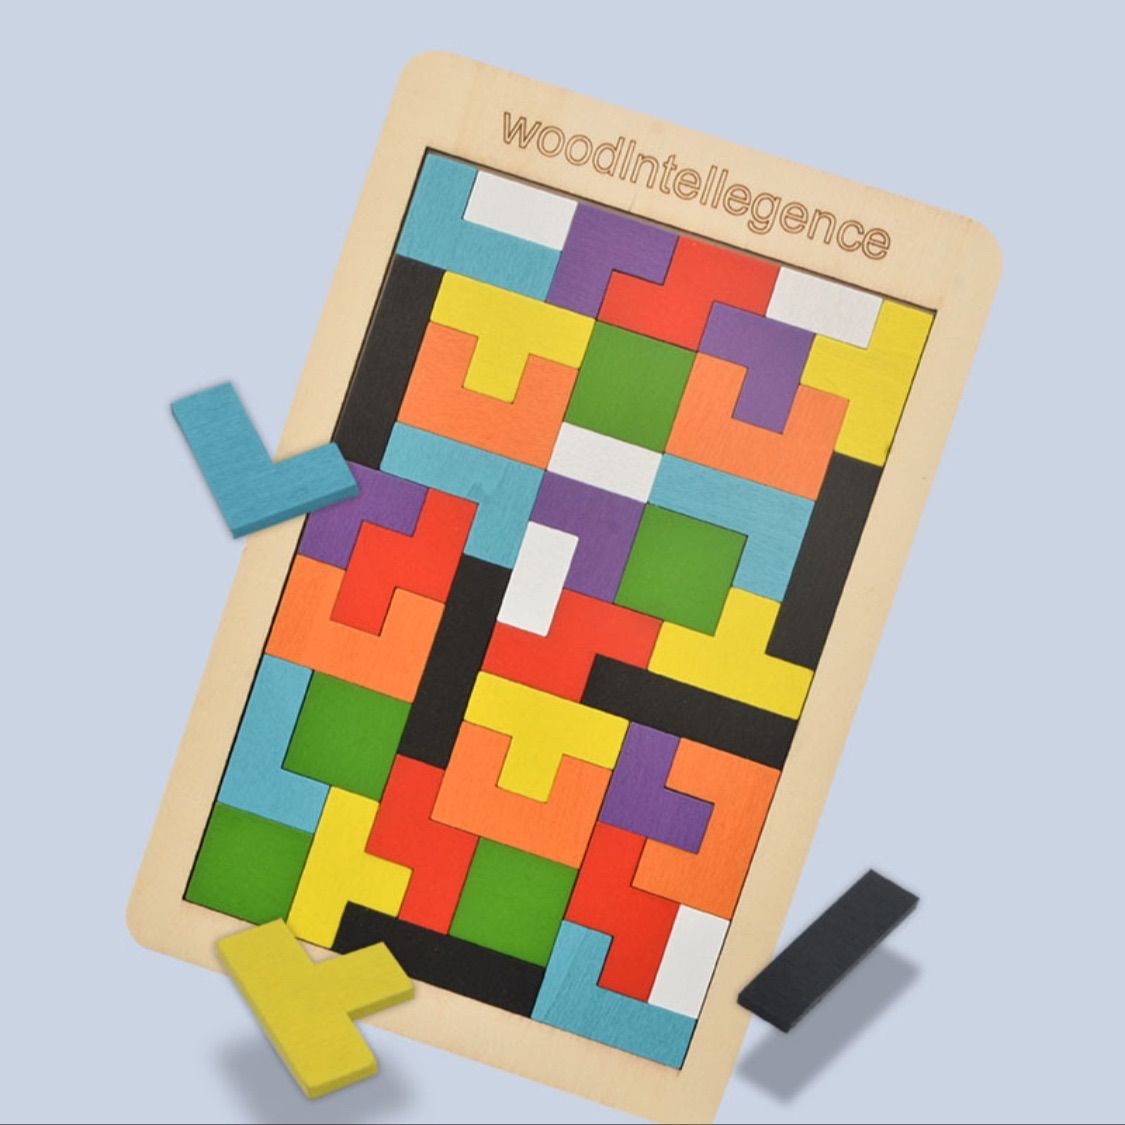 最安値級価格 Hombasisテトリス ブロックゲーム 図形 計算 知育 学習玩具 積み木おもちゃ 知恵パズル 図形モザイクパズル 教育セブンピース  組み合わせパズ